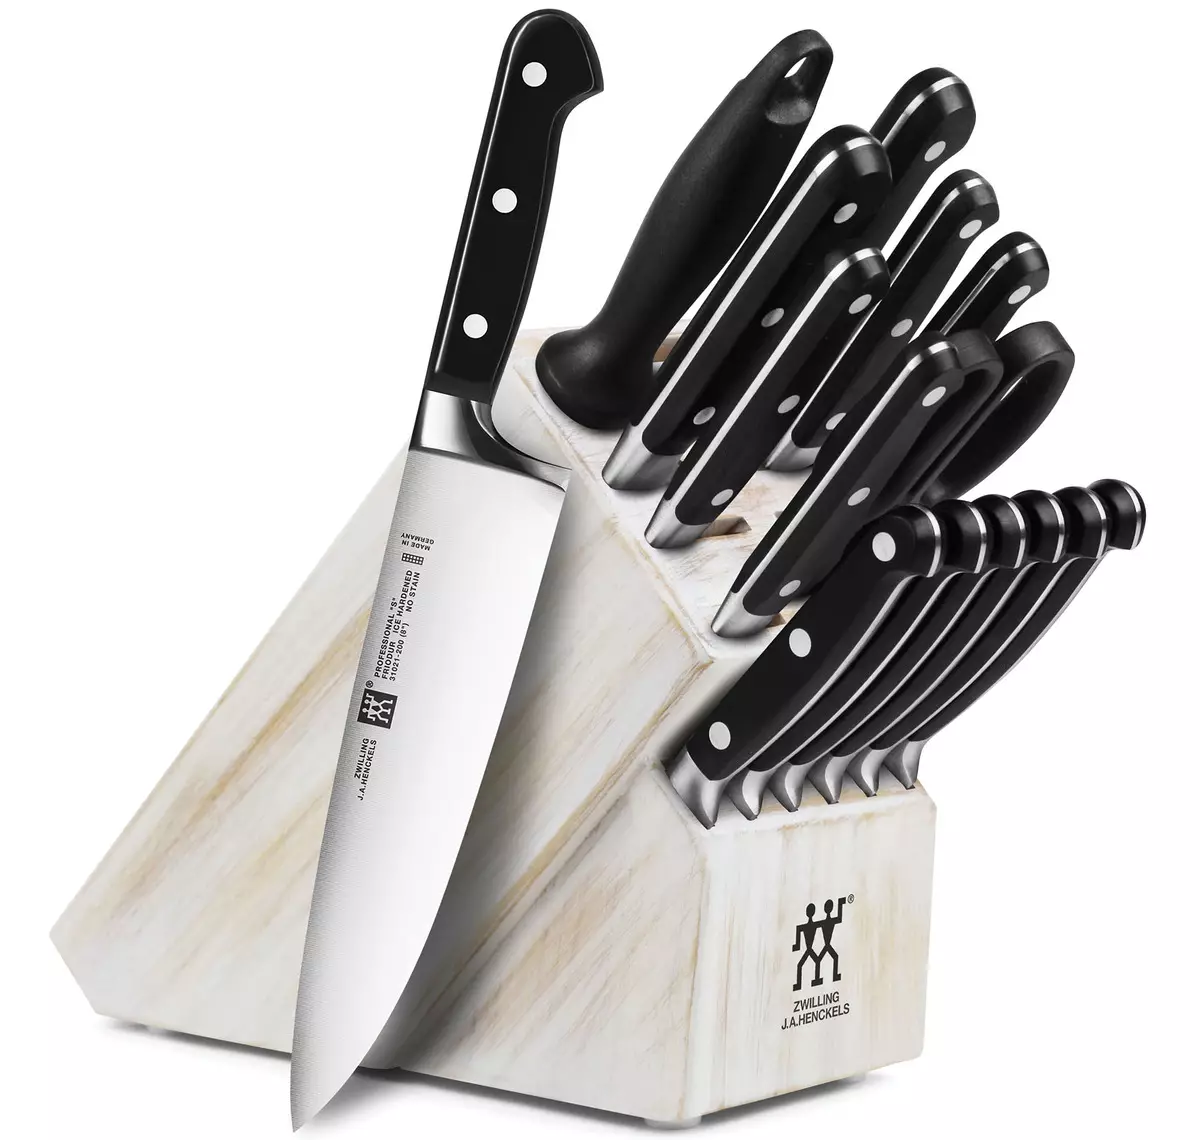 Німецькі ножі (46 фото): кухонні ножі фірми Zwilling J.A. Henckels і набори інших виробників. Вибір кращих ножів для кухні 24990_28